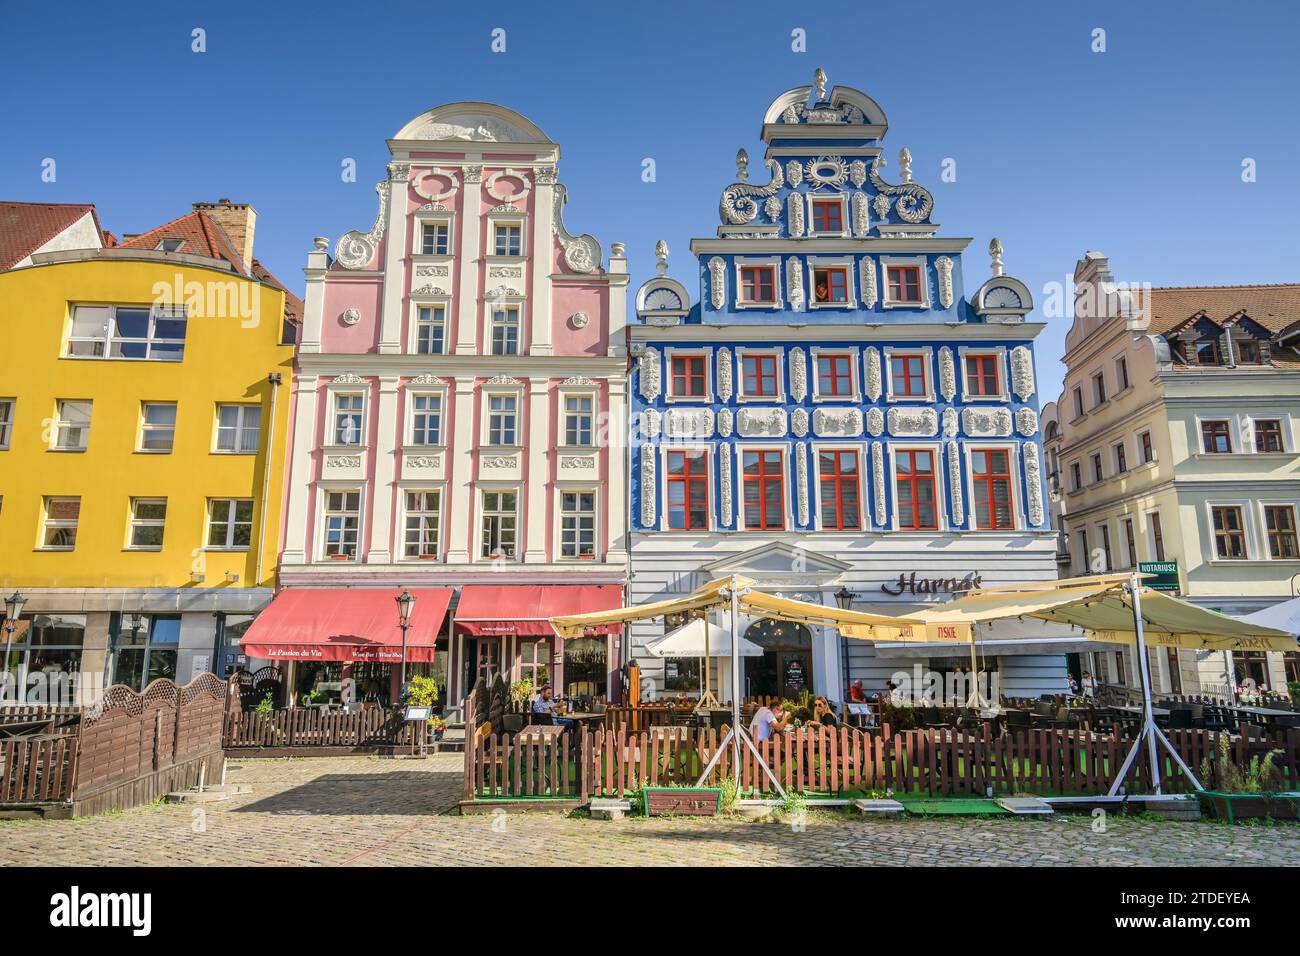 Mevius-Haus und Linsing-Haus, Altbauten am Heumarkt- Rynek Sienny, Altstadt, Stettin, Woiwodschaft Westpommern, Polen Stock Photo